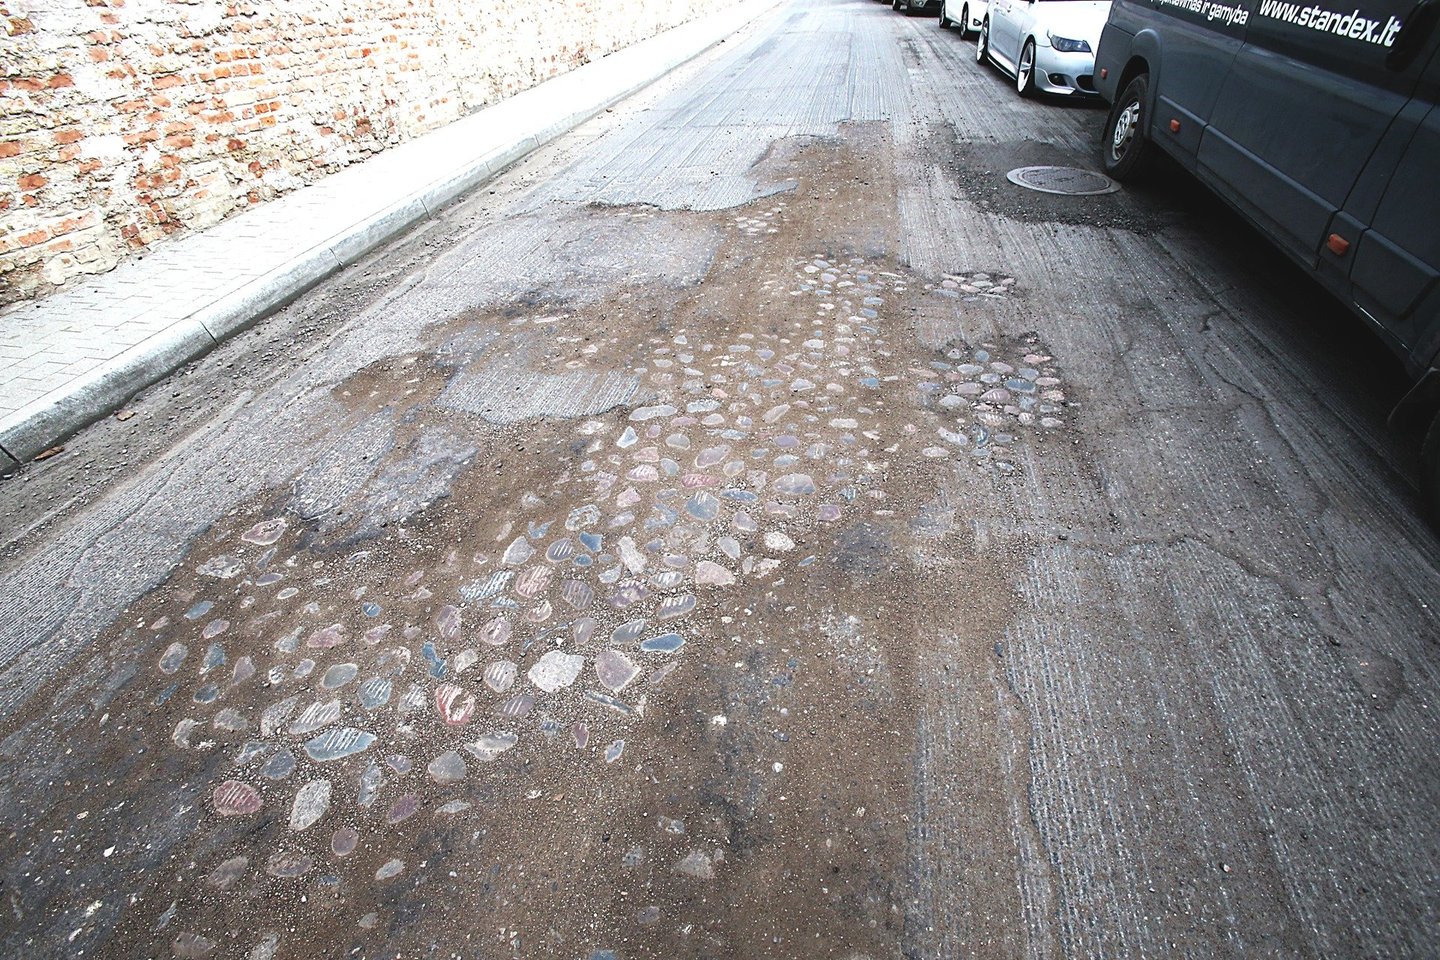 Subačiaus gatvės atkarpą nugremžus frezomis pasirodė senojo grindinio akmenys. Bet tai savivaldybės nesudomino – jie bus kuo greičiau užlieti asfaltu.<br>R.Danisevičiaus nuotr.